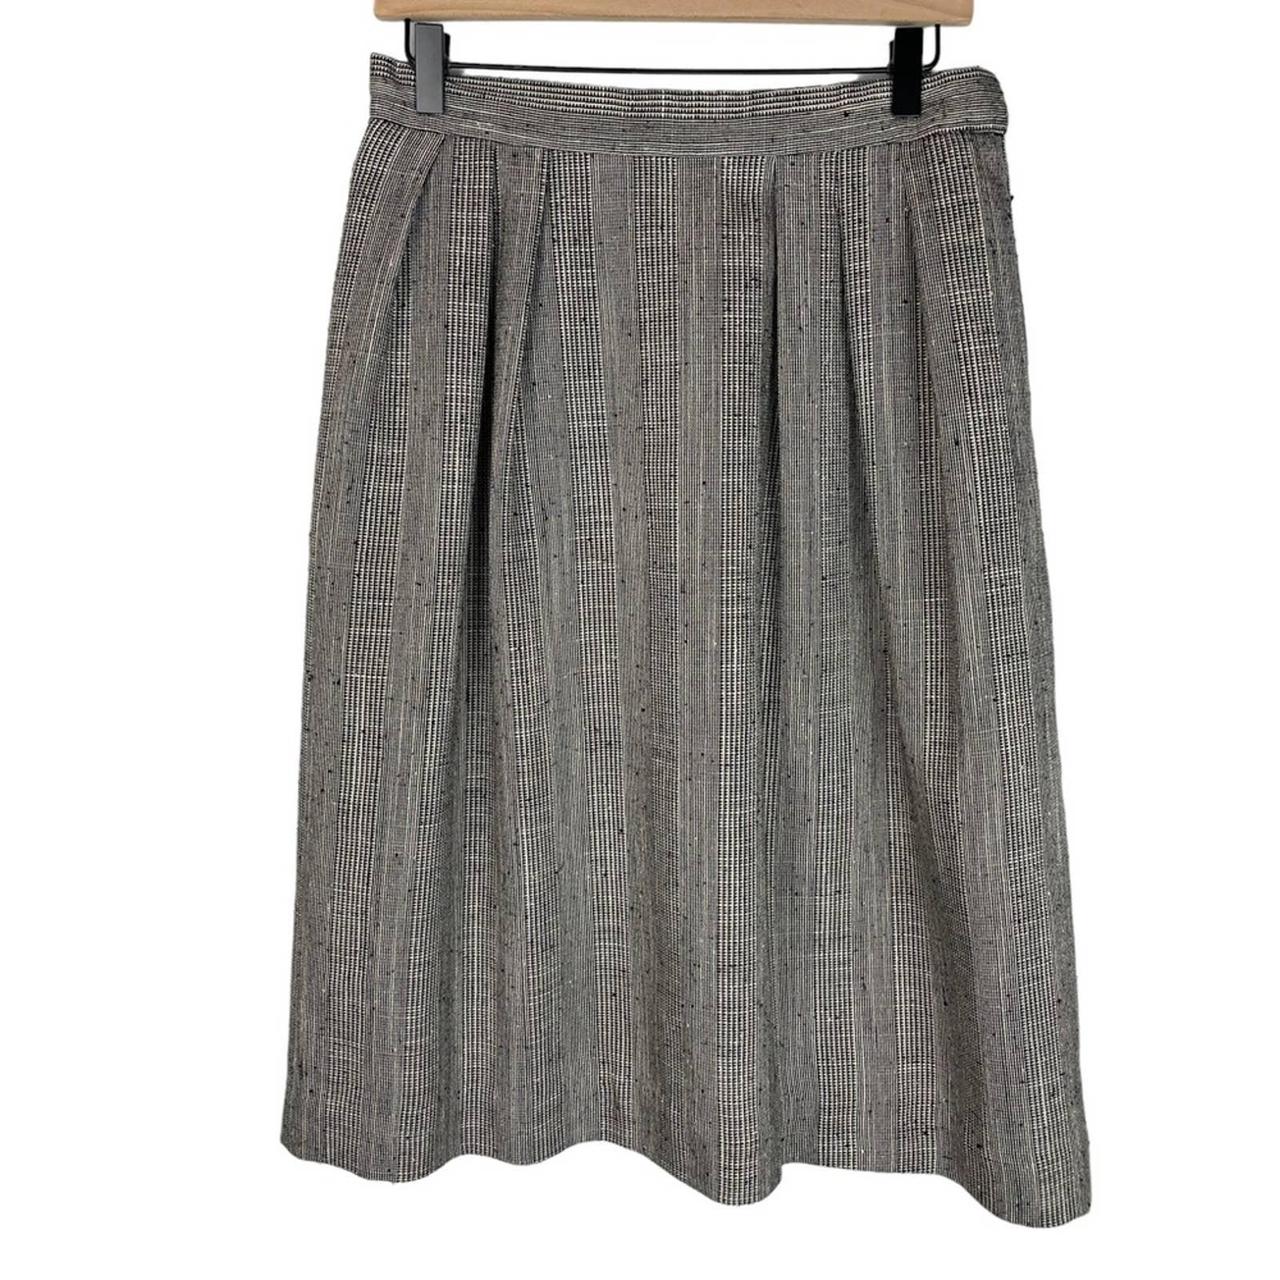 Vintage 80s Lord Isaacs wool blend plaid midi skirt... - Depop